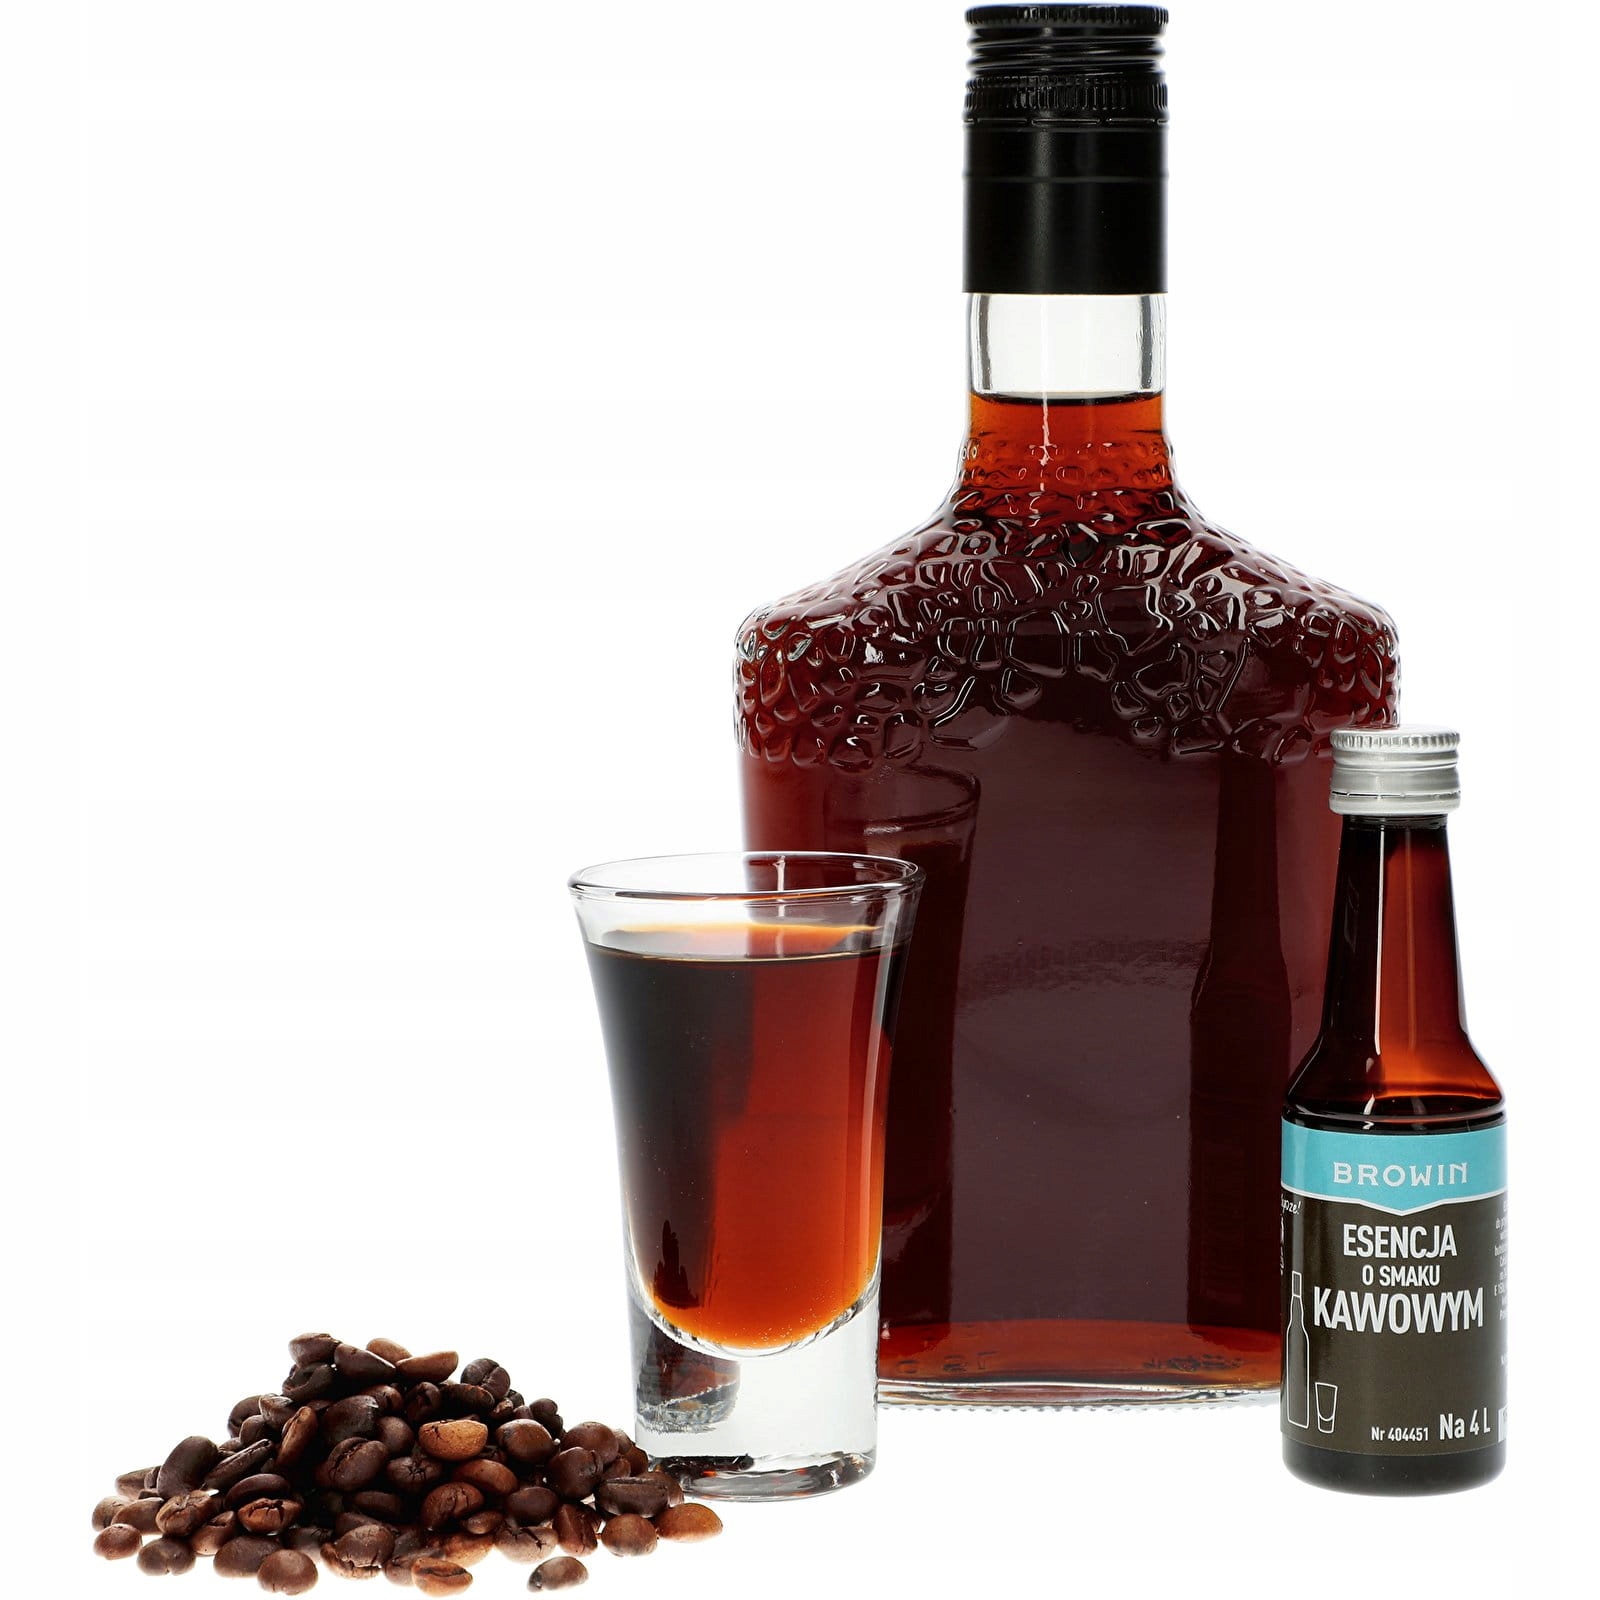 кавова есенція для спирту на 4л BROWIN торгова назва кавова ароматизована есенція на 4 л - 40 мл